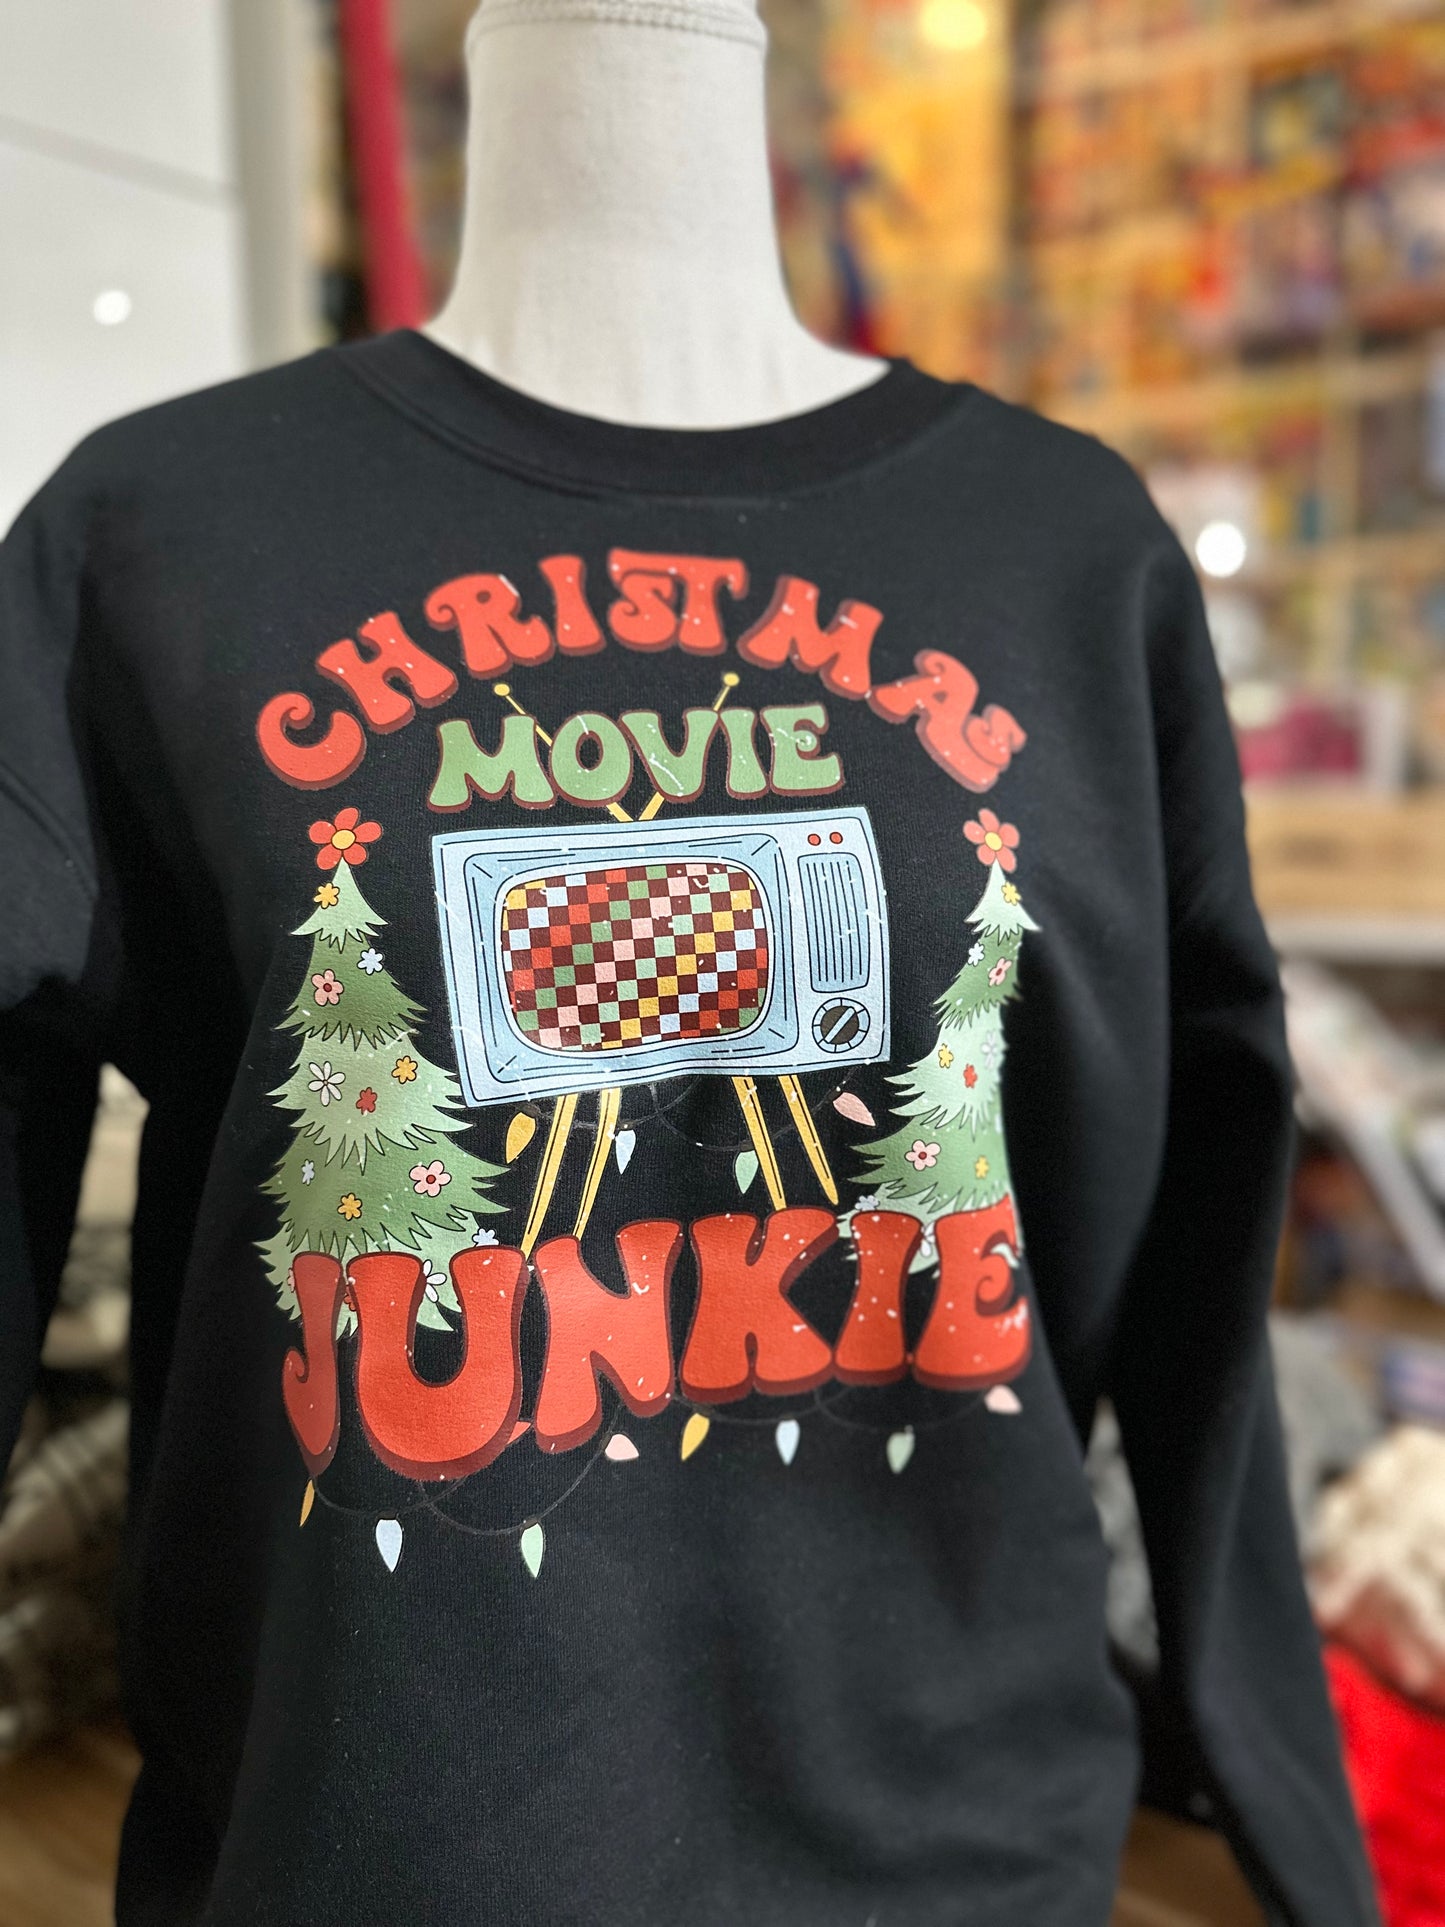 Christmas movie junkie crewneck